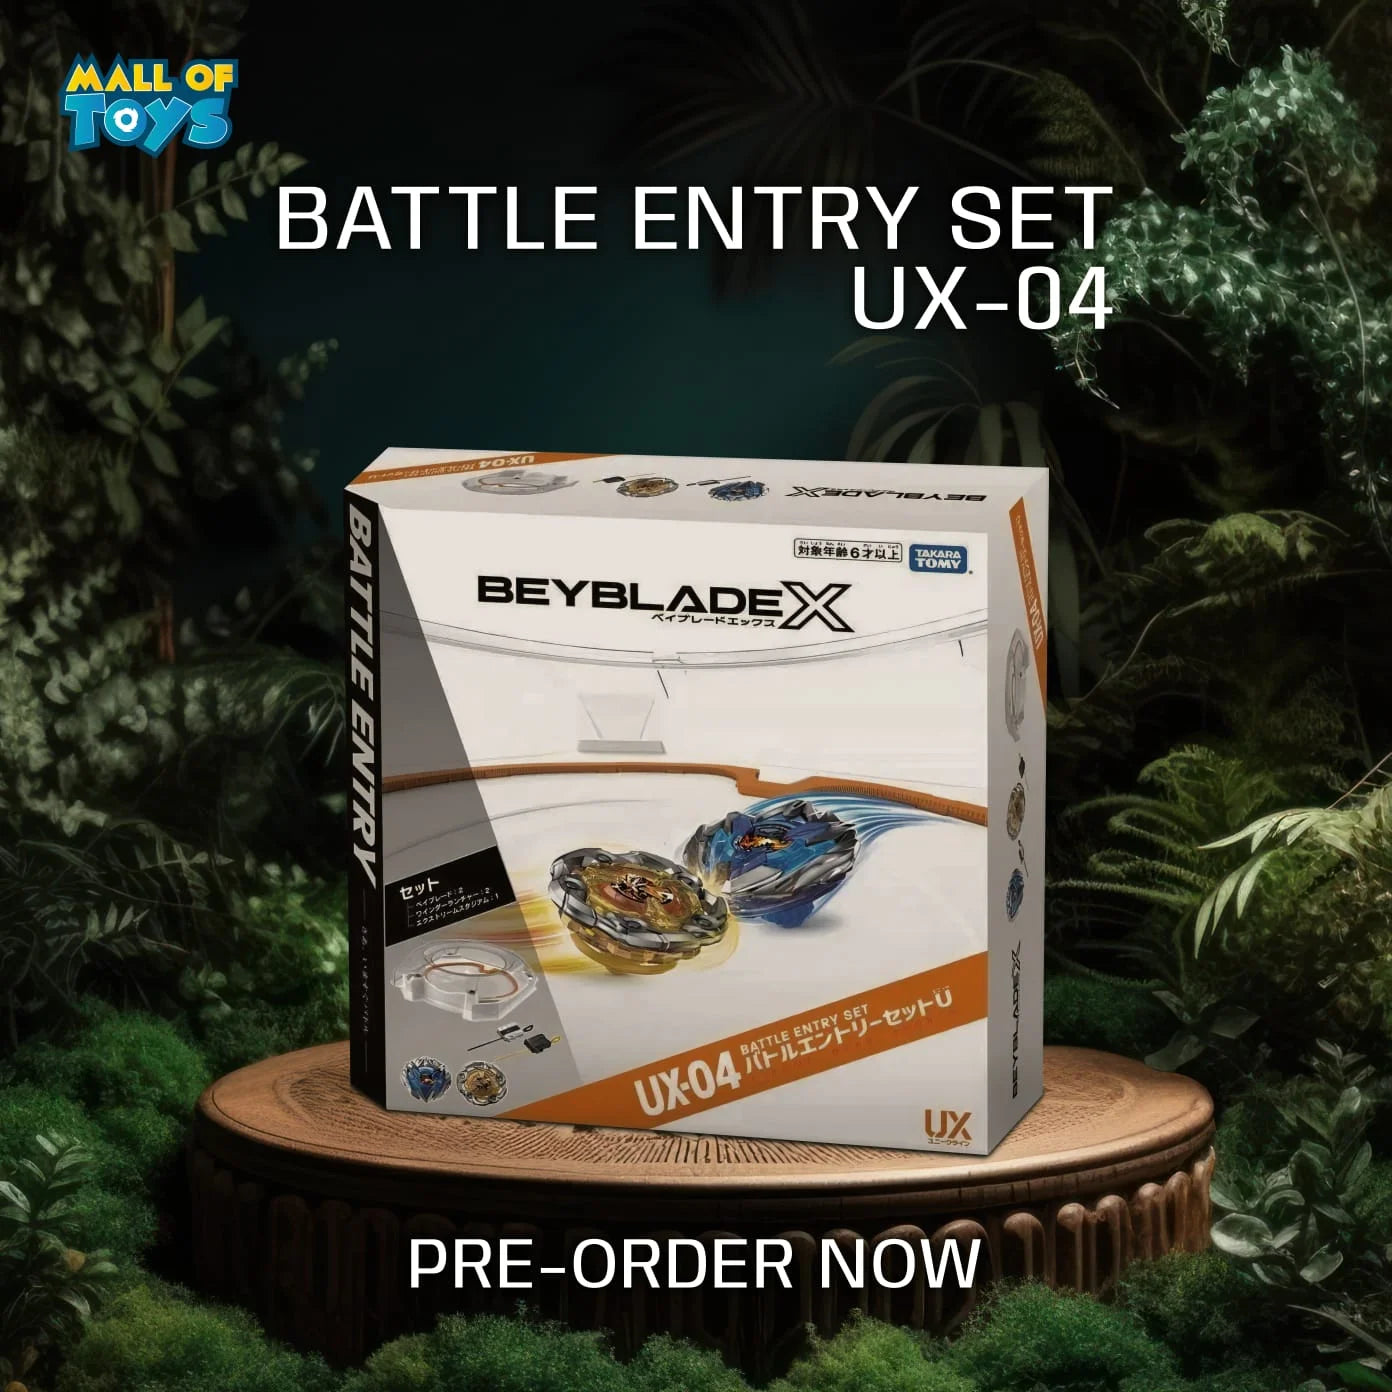 UX 04 battle entry set pre order